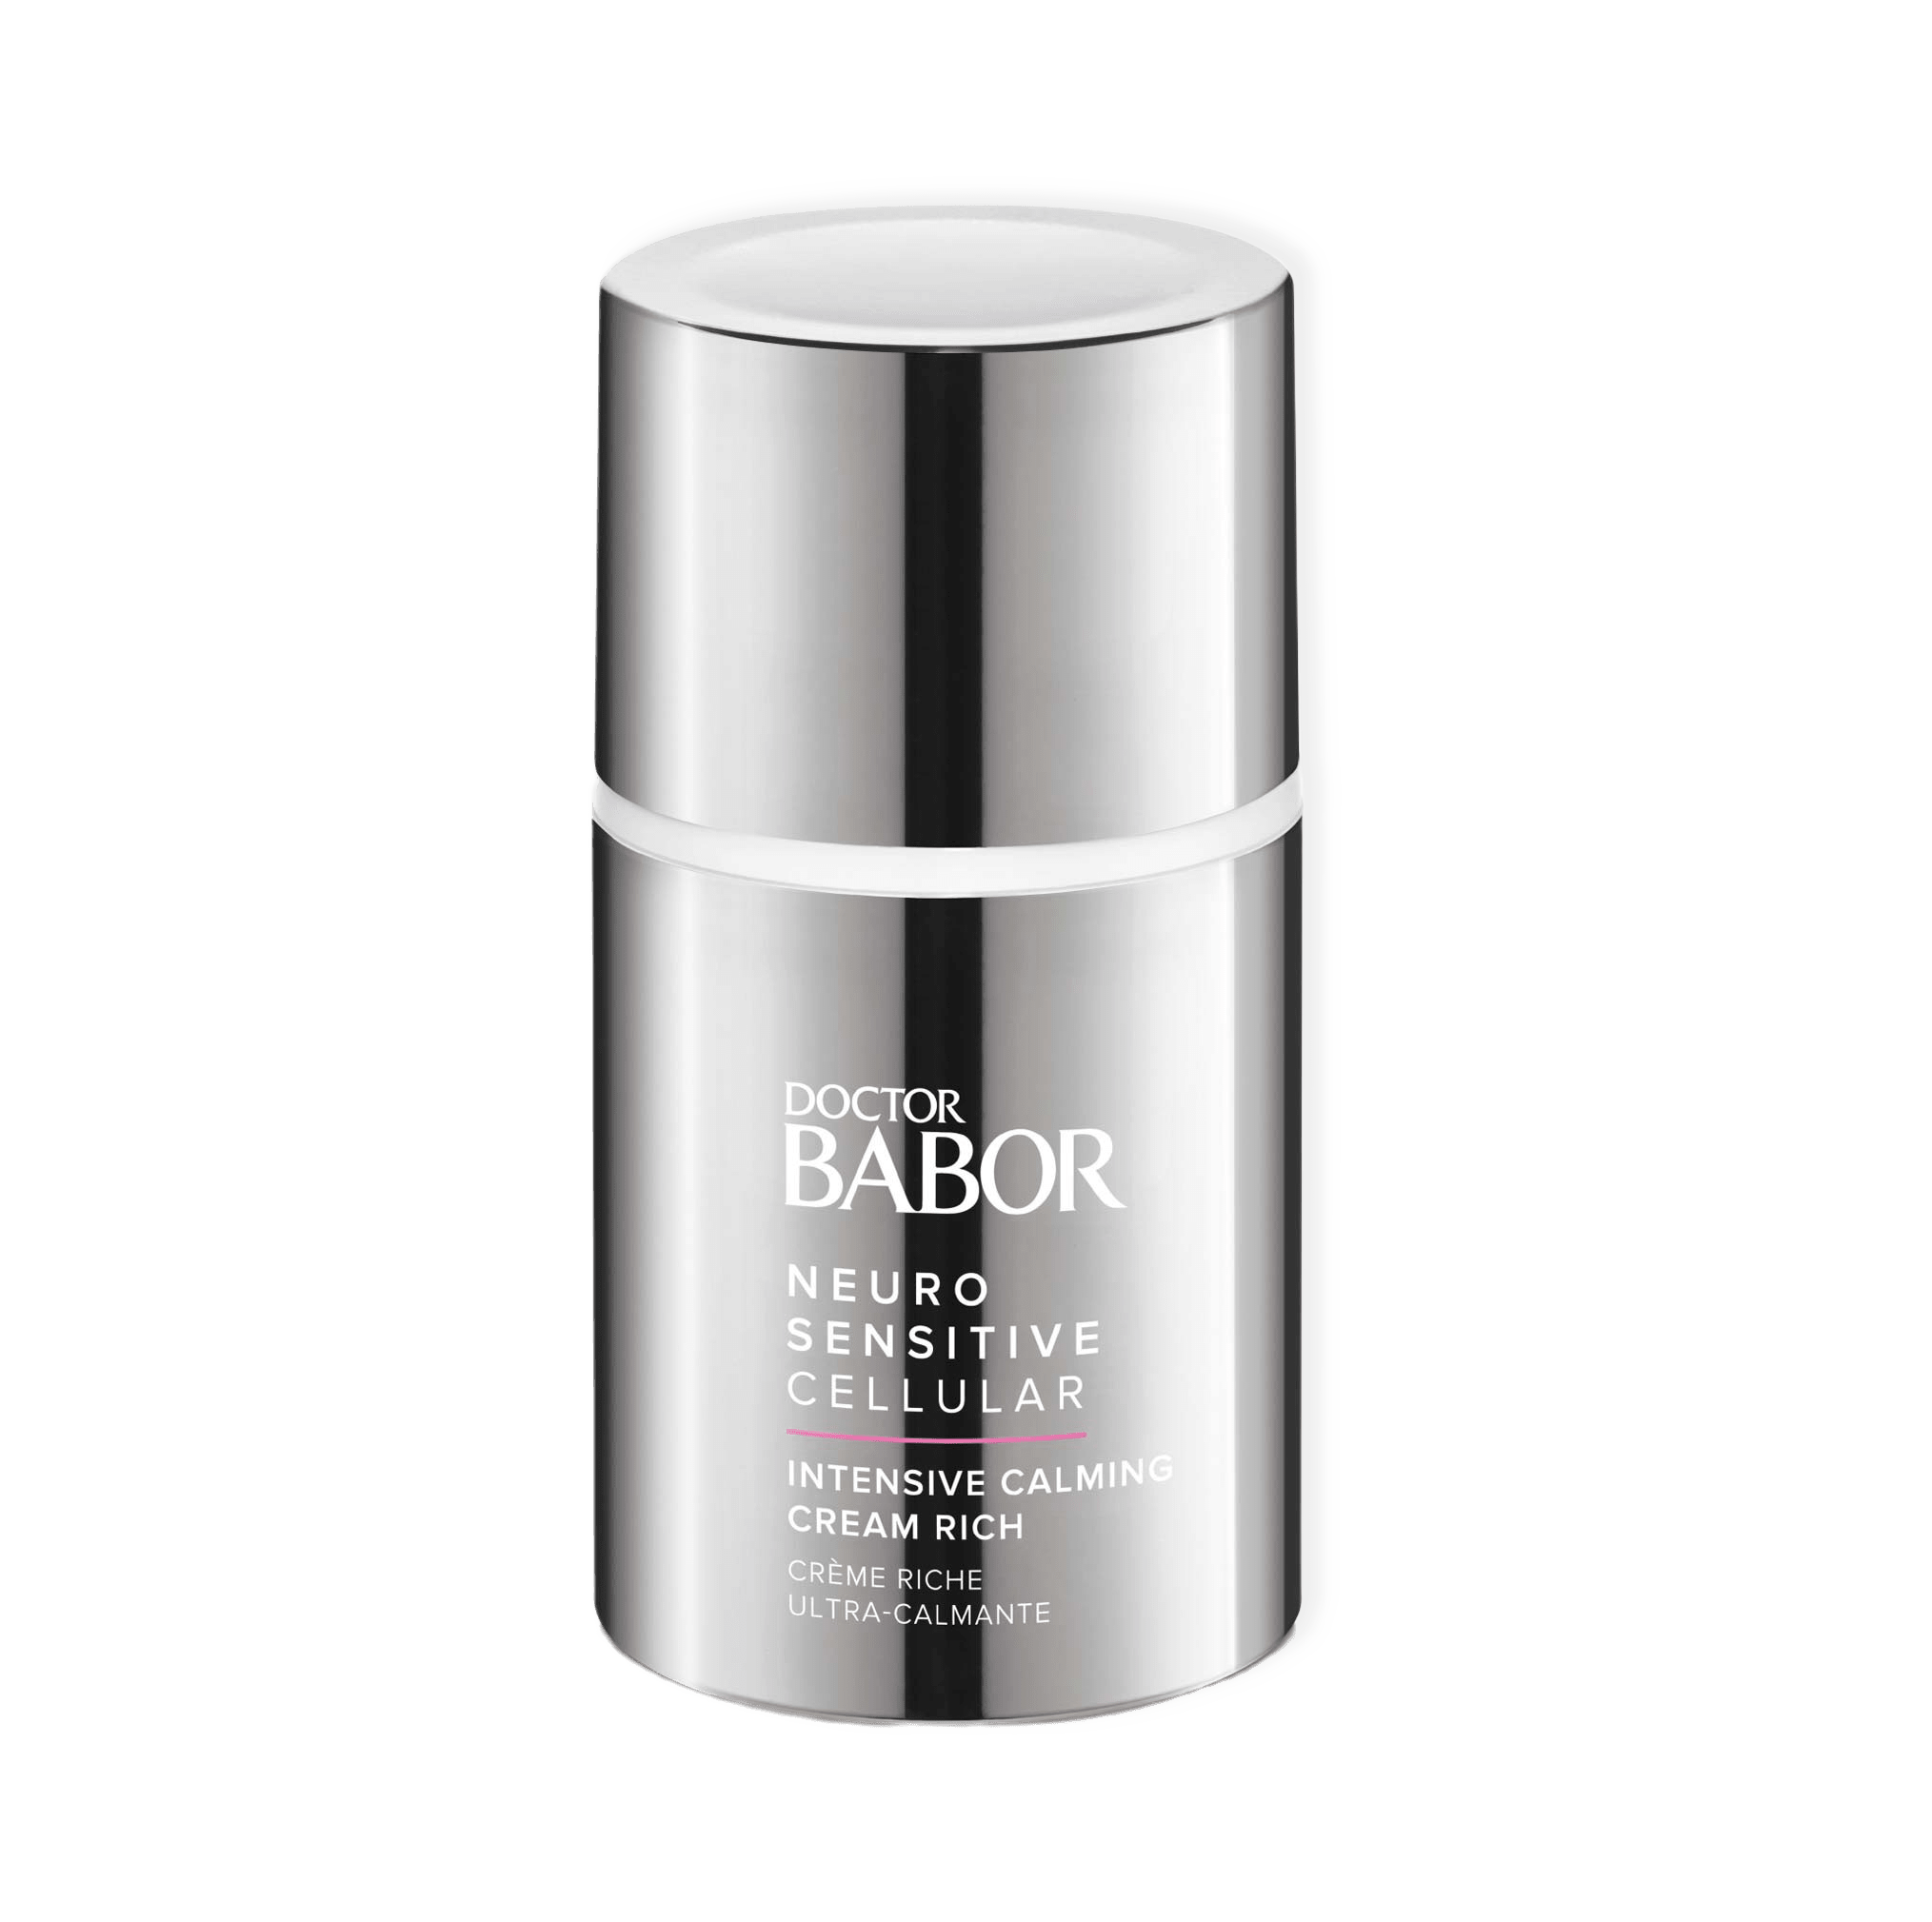 Neuro Sensitive Intensive Calming Cream Rich från BABOR